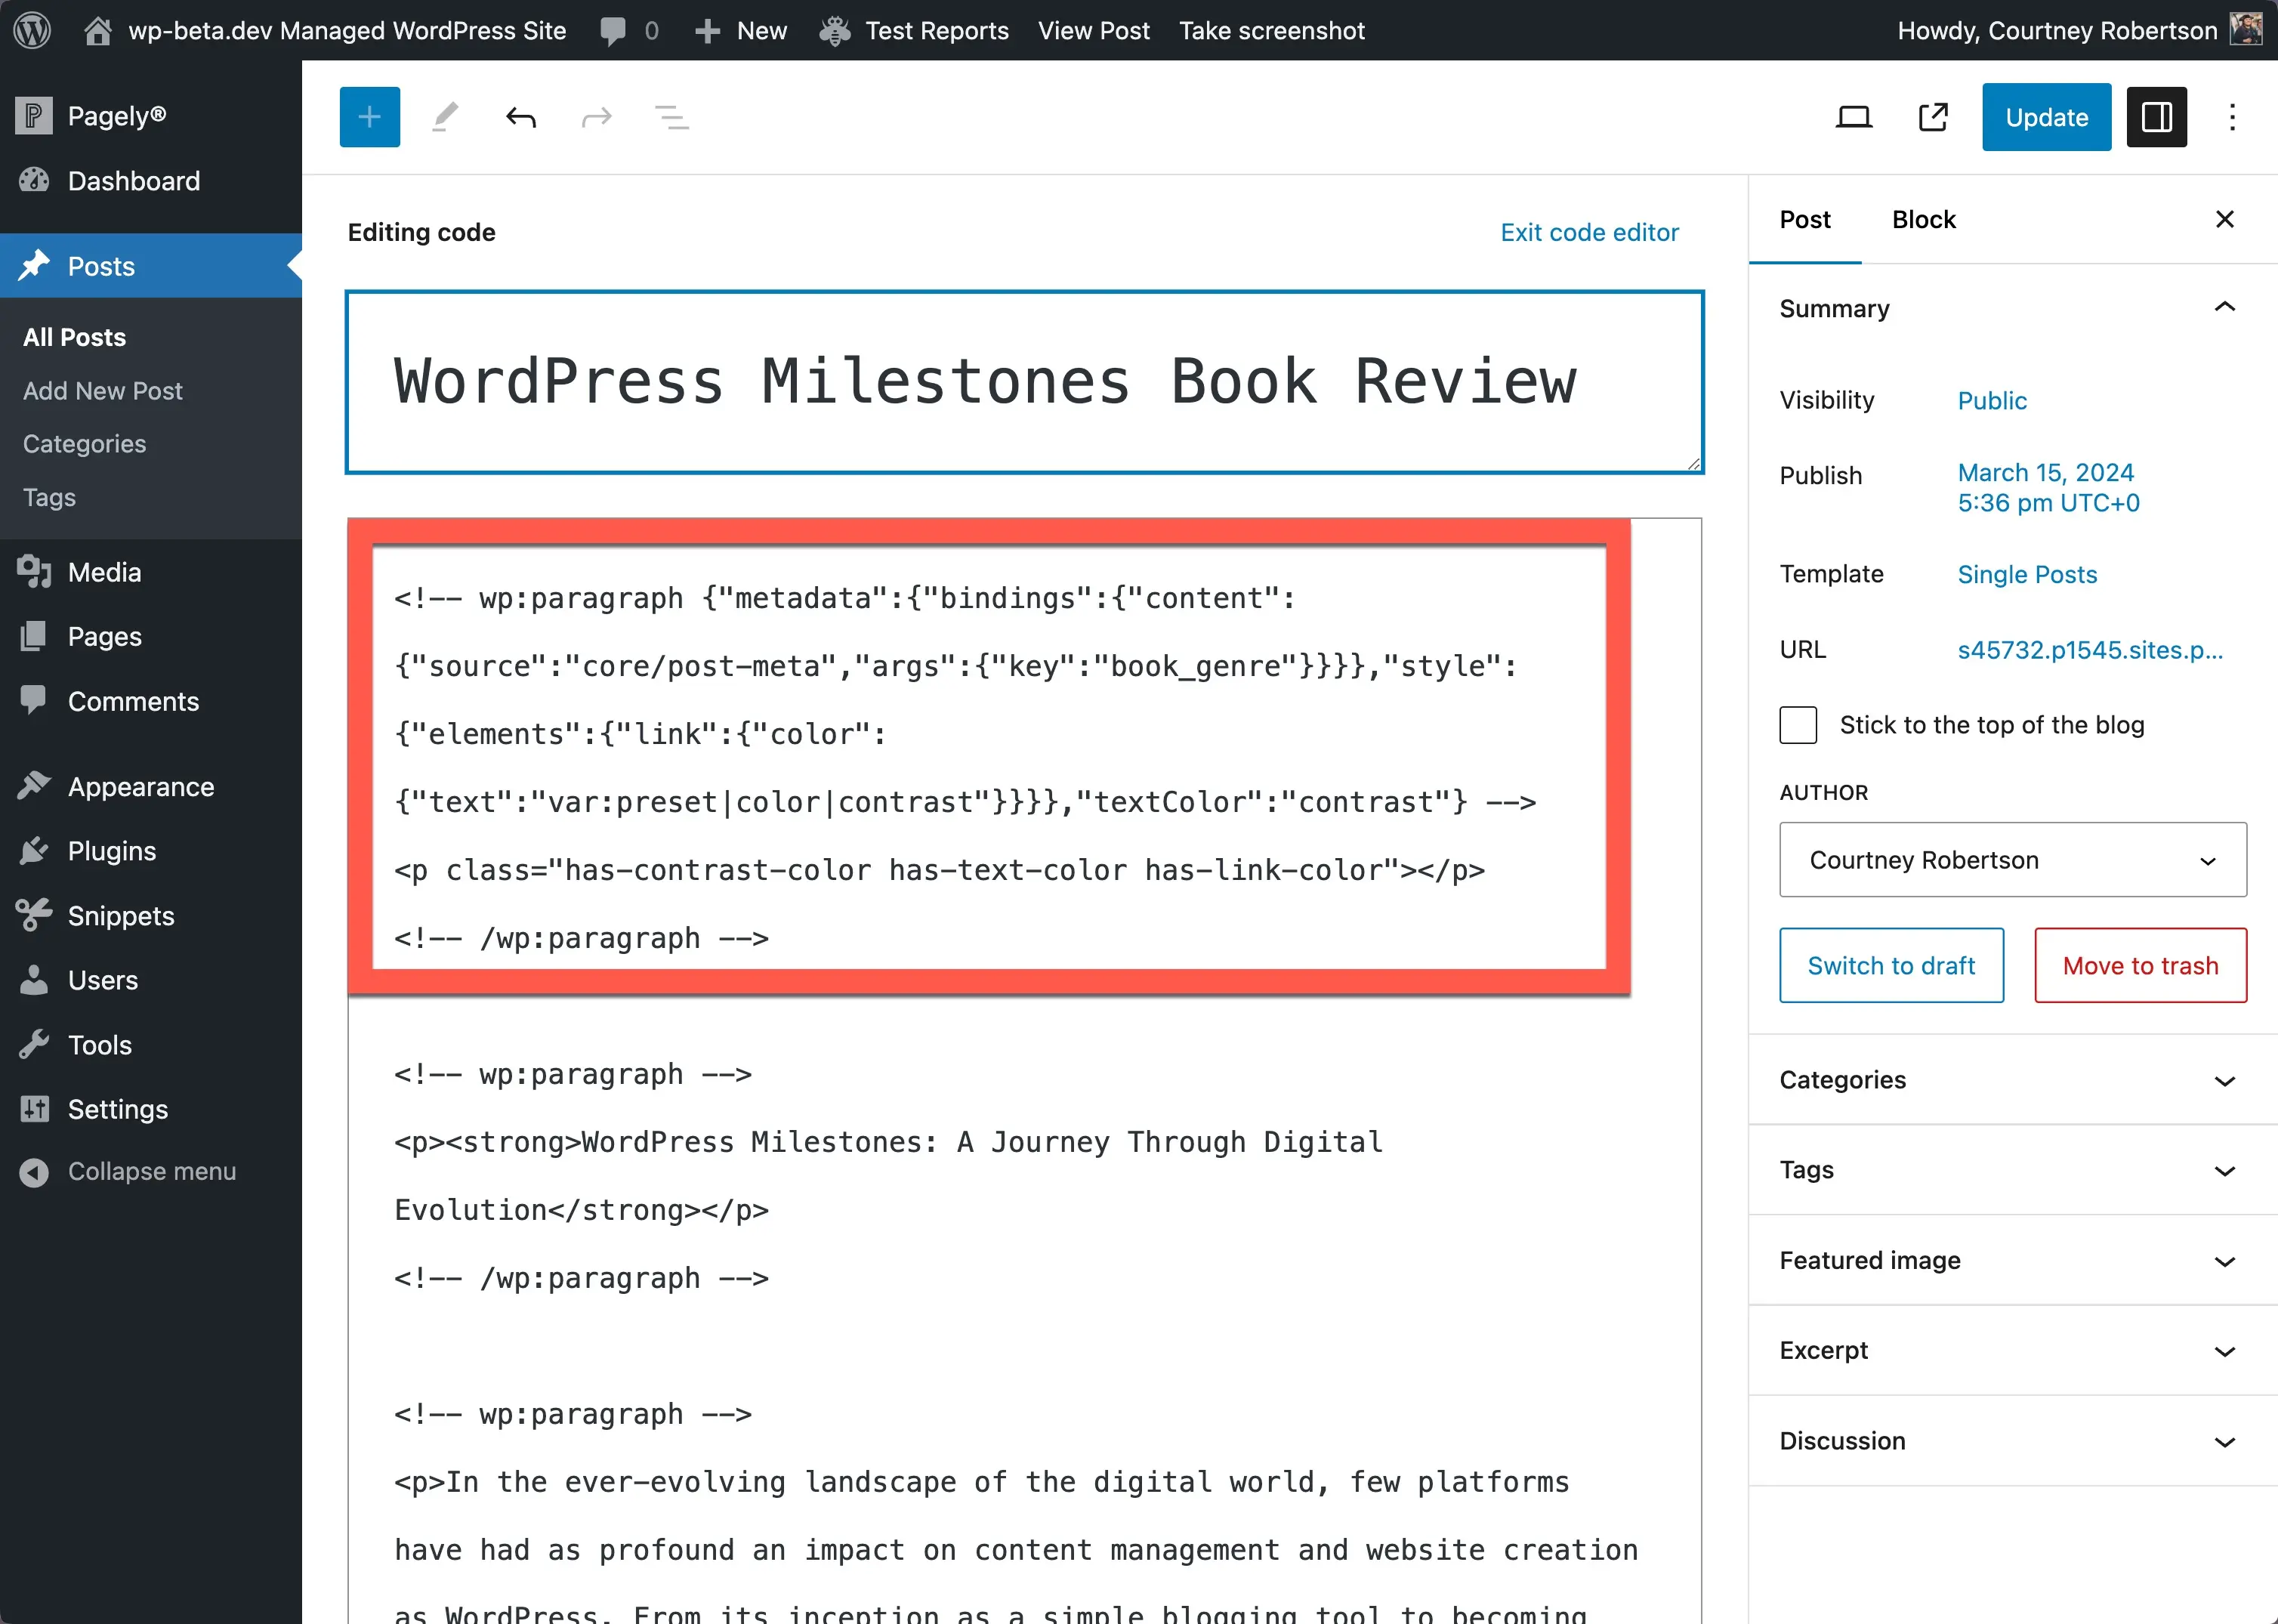 Editor posting WordPress dalam tampilan editor kode. Di bagian atas adalah kode yang diperlukan untuk menampilkan bidang khusus dengan kotak merah yang muncul di sekitarnya untuk menunjukkan di mana bidang tersebut berada.